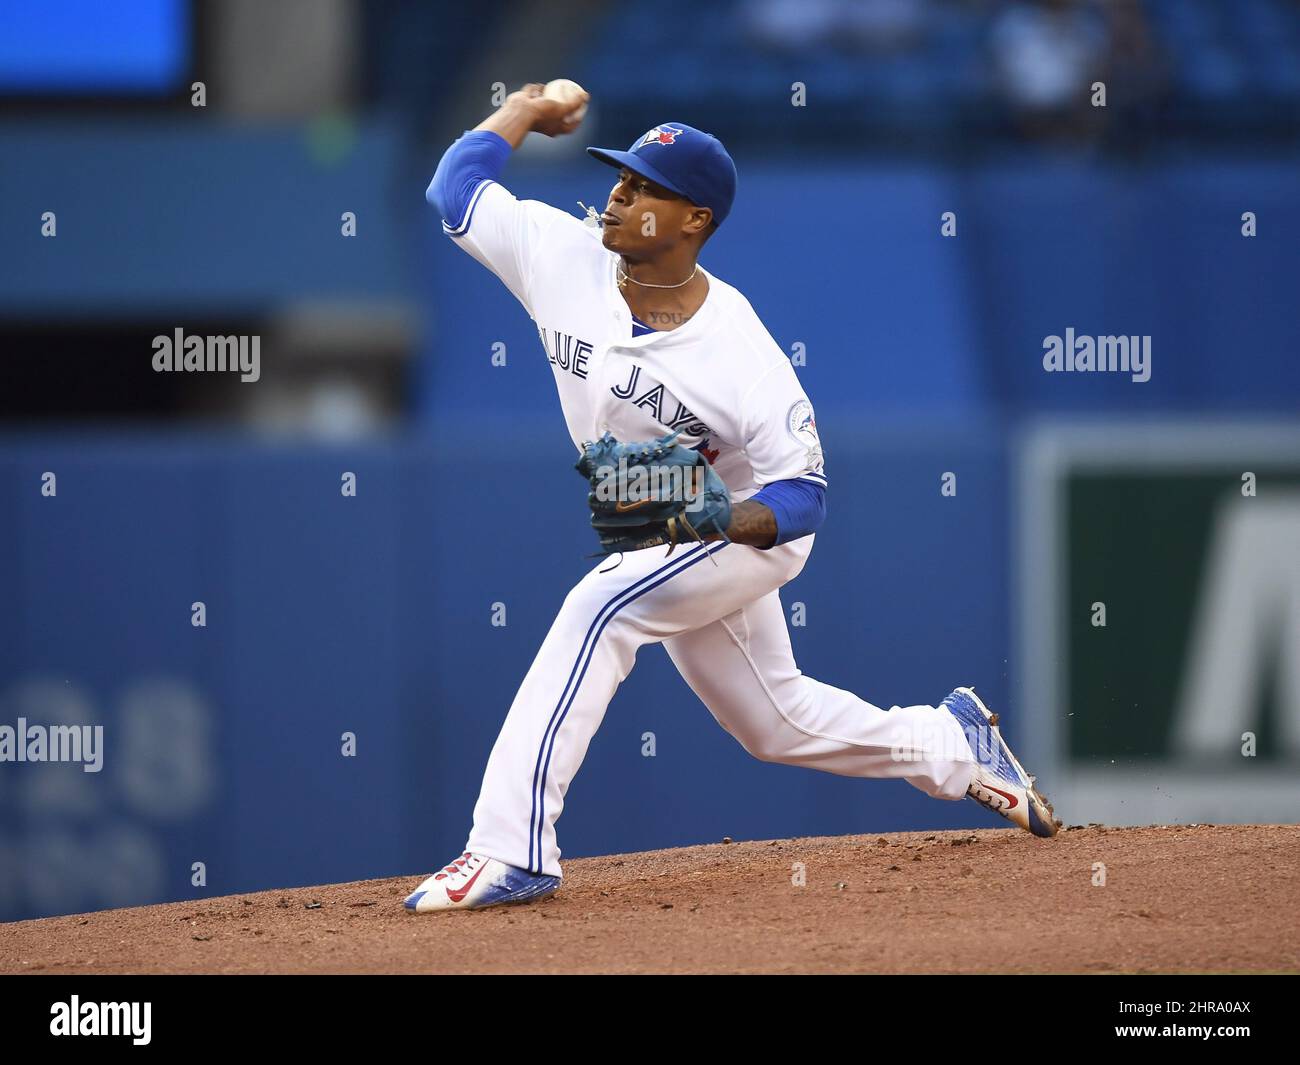 Le lanceur de départ des Blue Jays de Toronto, Marcus Stroman, se lance contre les San Diego Padres lors du premier match de baseball interligue de la MLB, à Toronto, le mardi 26 juillet 2016. LA PRESSE CANADIENNE/Frank Gunn Banque D'Images